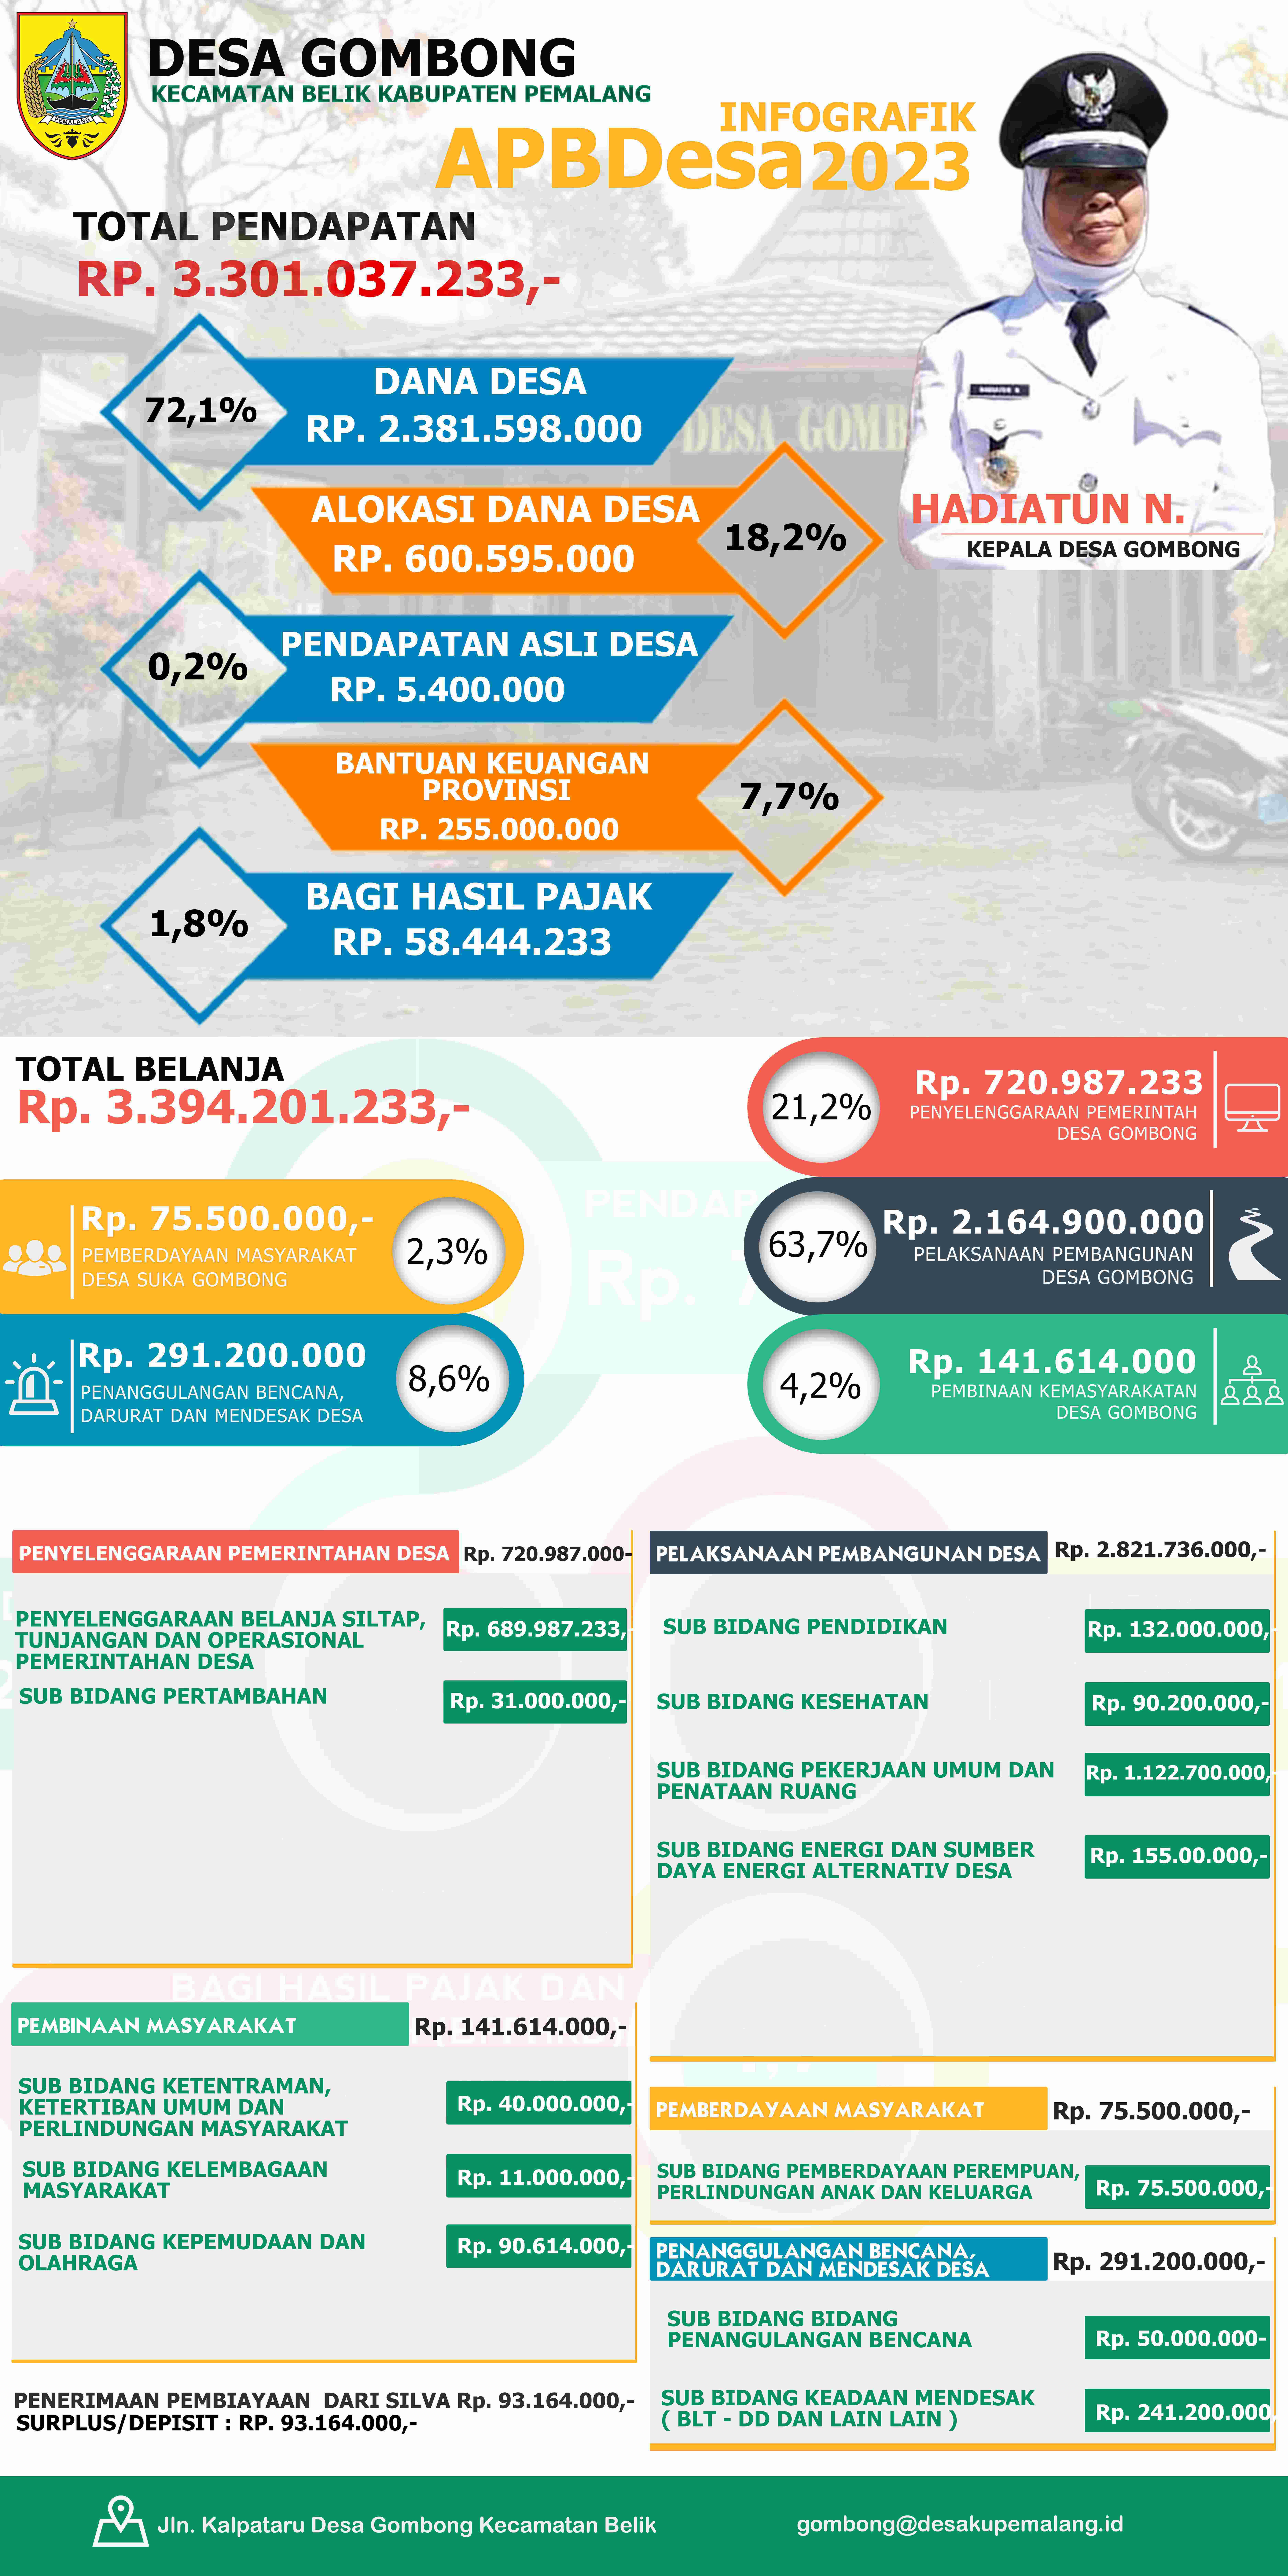 Infografis APBDes 2023 Desa Gombong Kec. Belik